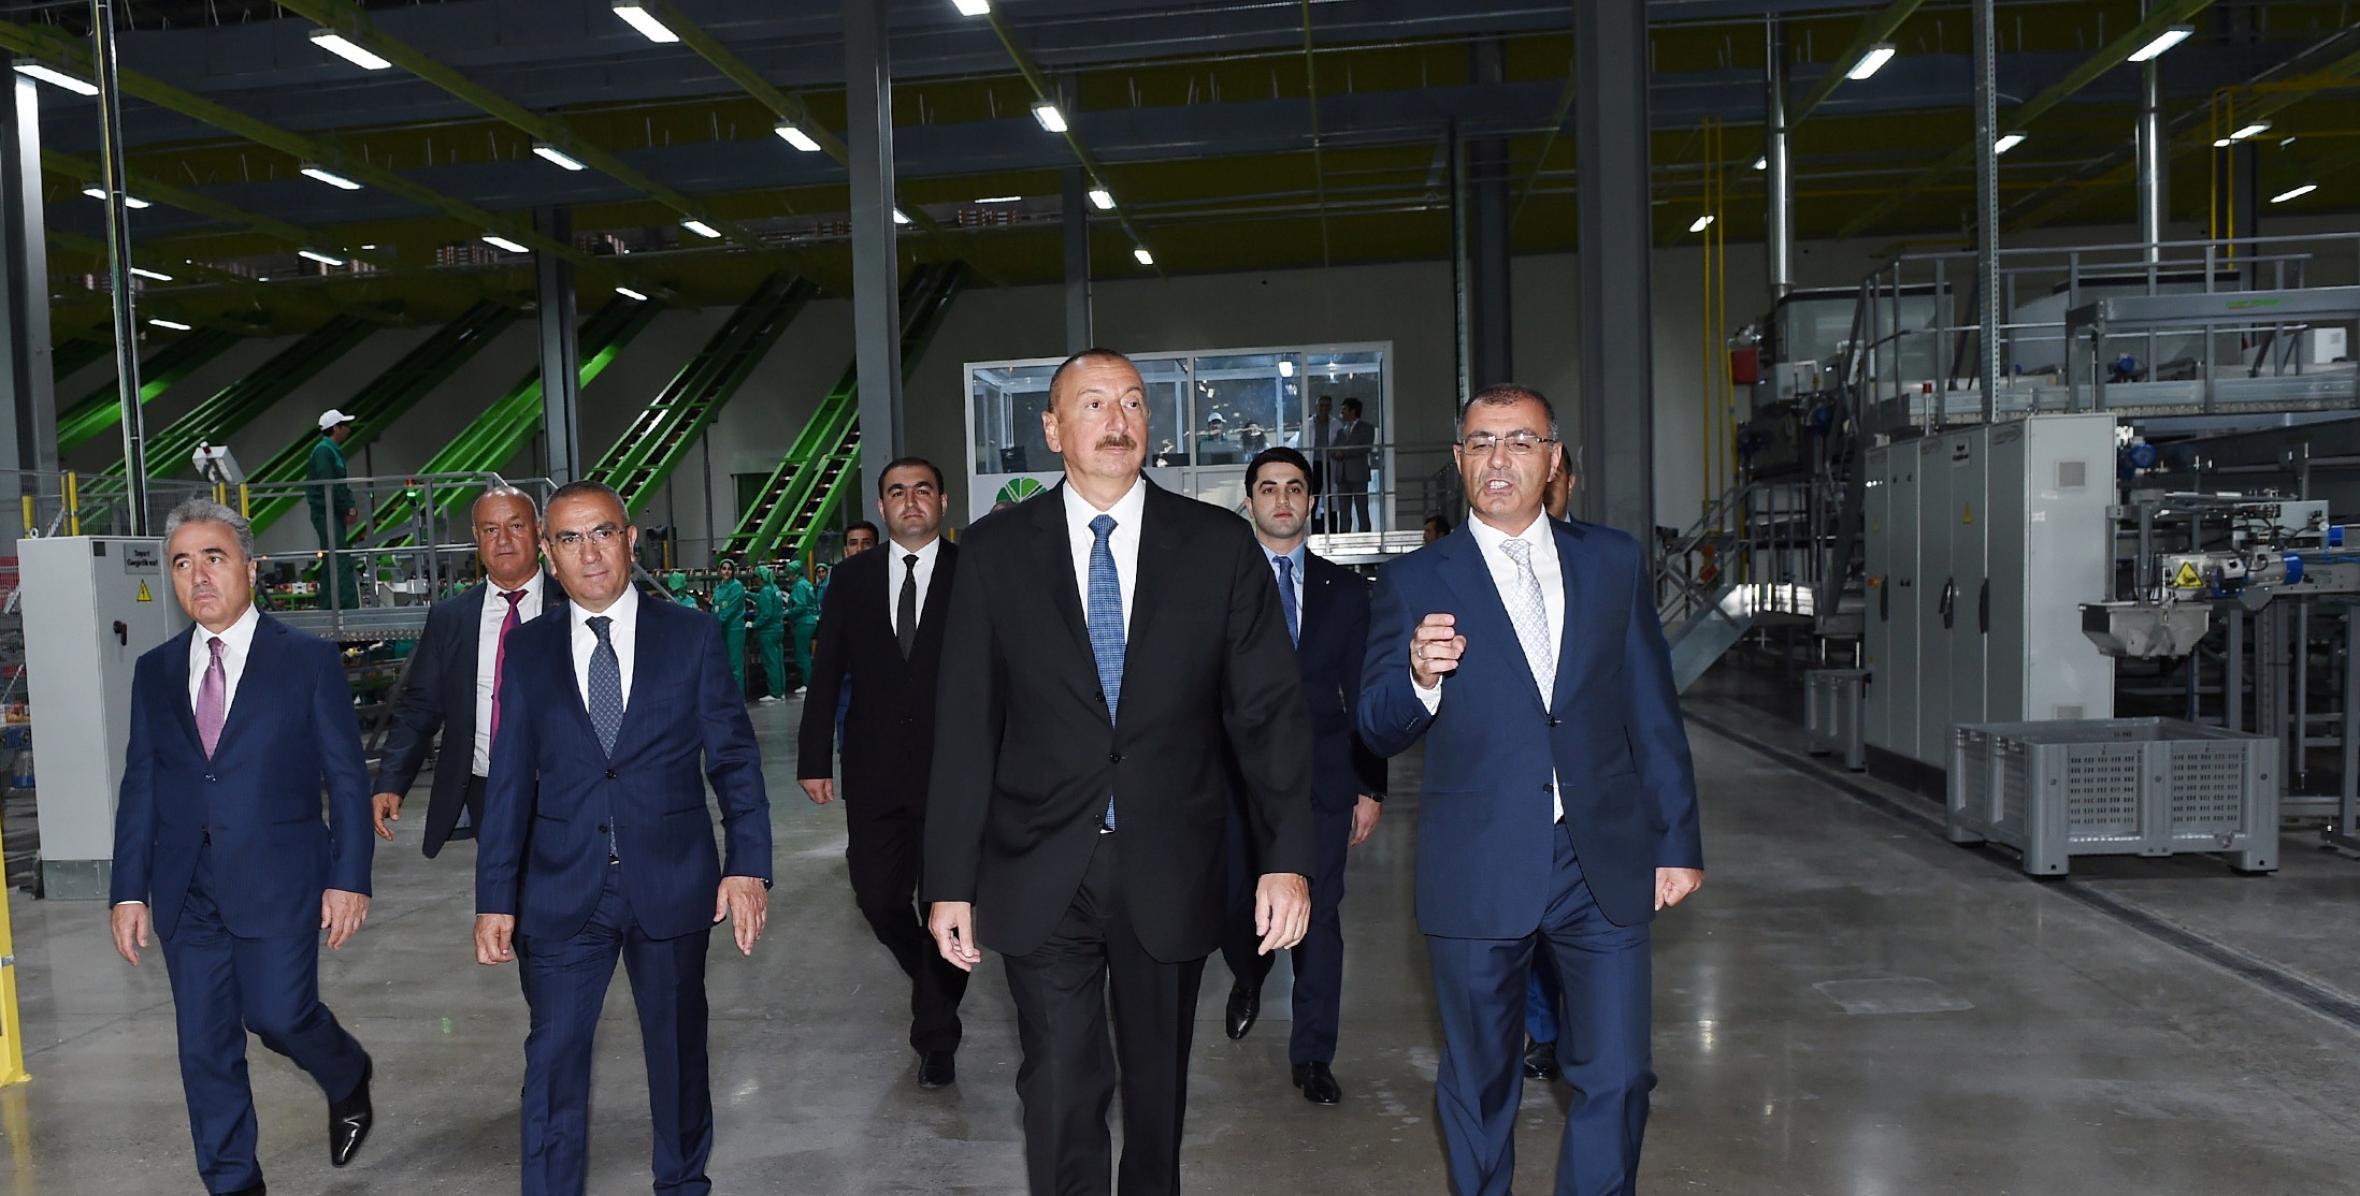 İlham Əliyev “Şəmkir Aqroparkı”nın Logistika Mərkəzinin açılışında iştirak edib